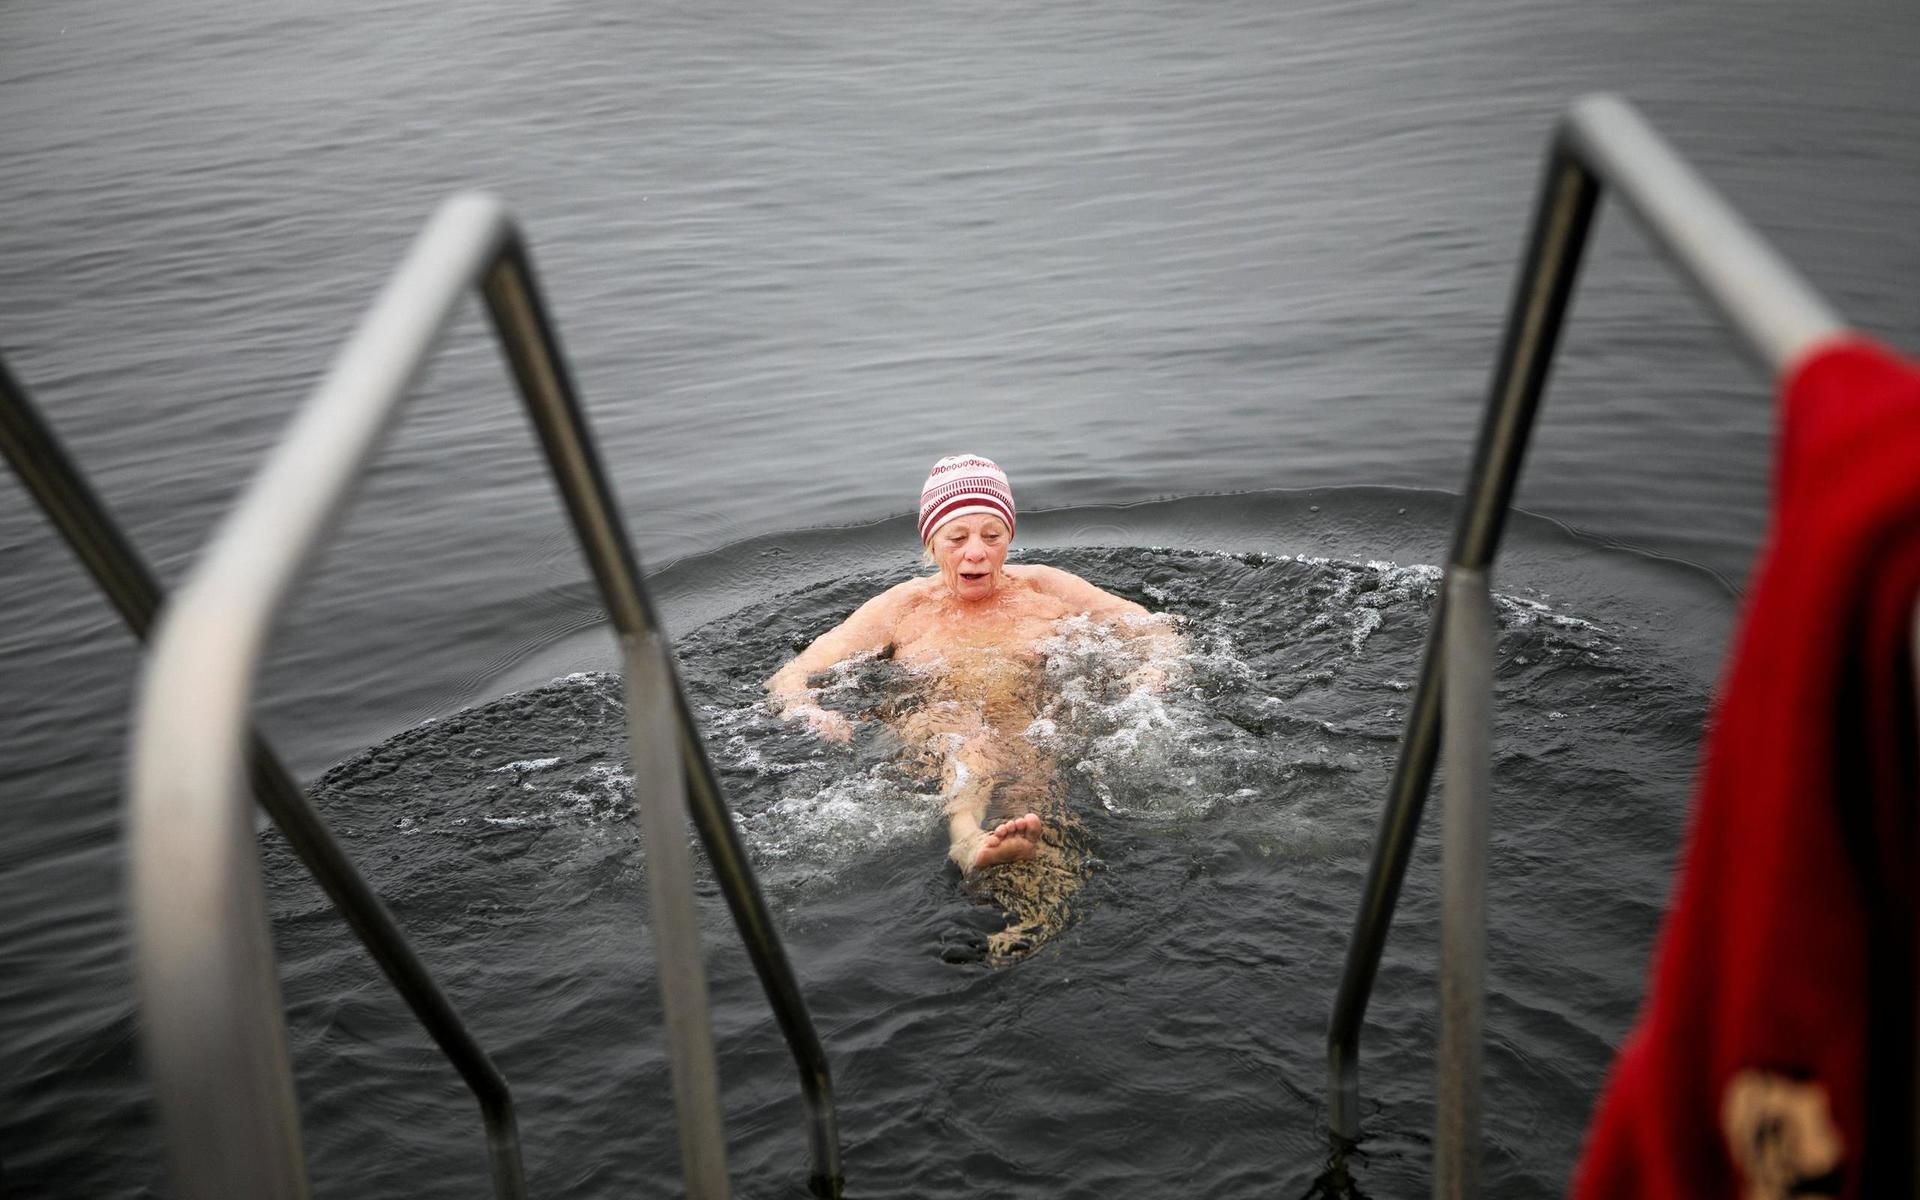 Vid kalla temperaturer väljer Barbro Strömqvist att ha mössan på sig under badet.